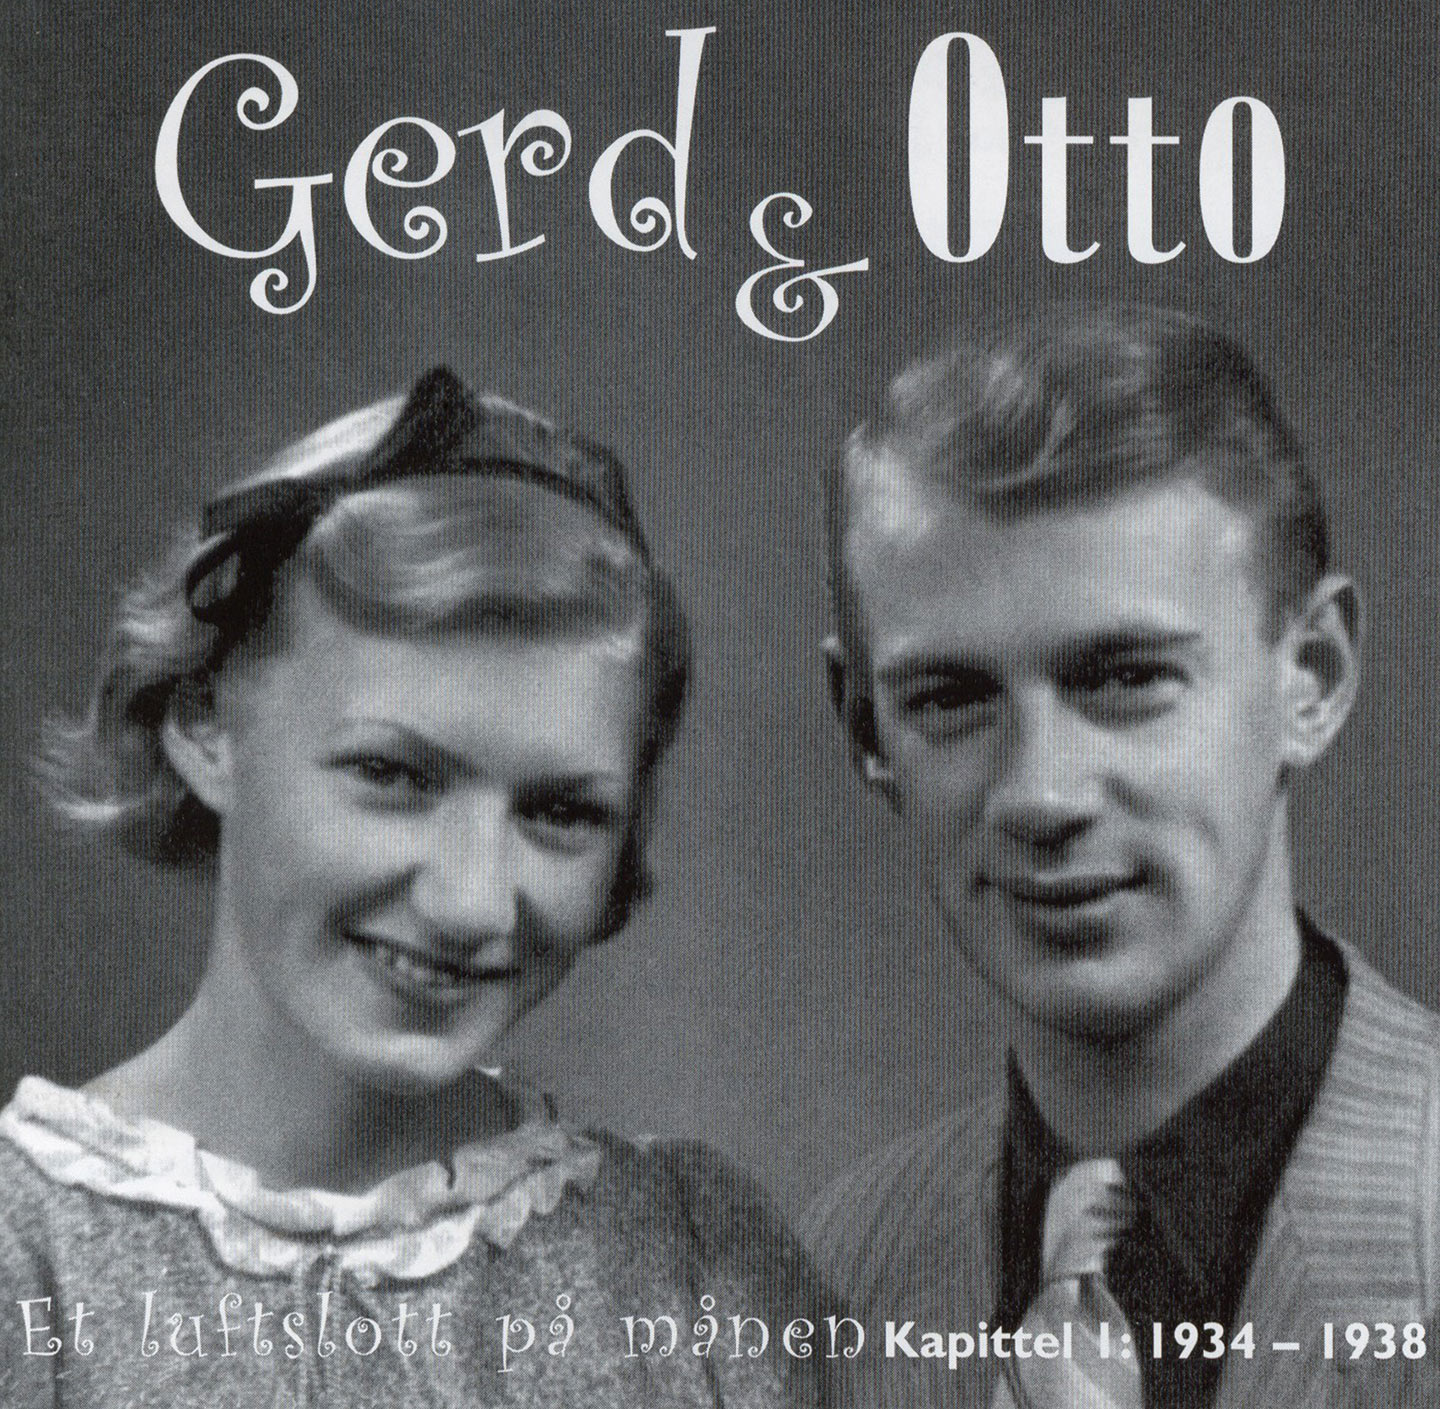 Gerd og Otto Nielsen